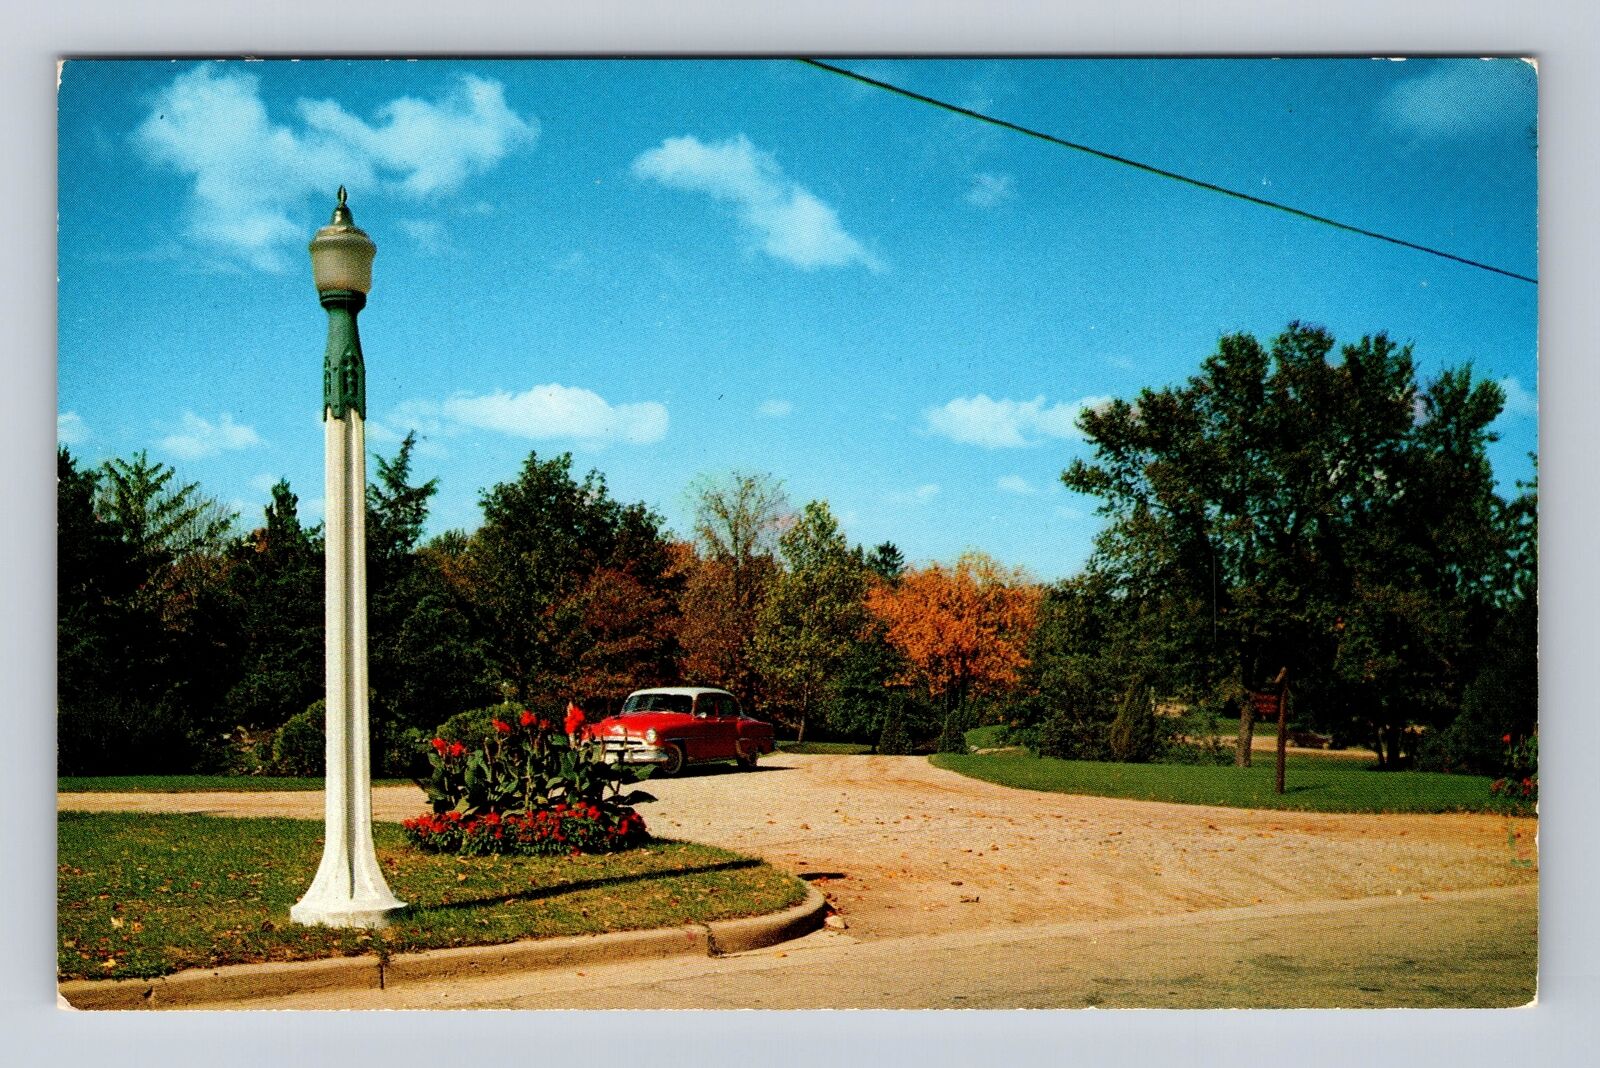 Sturgis MI-Michigan, City Park, Antique, Vintage Souvenir Postcard